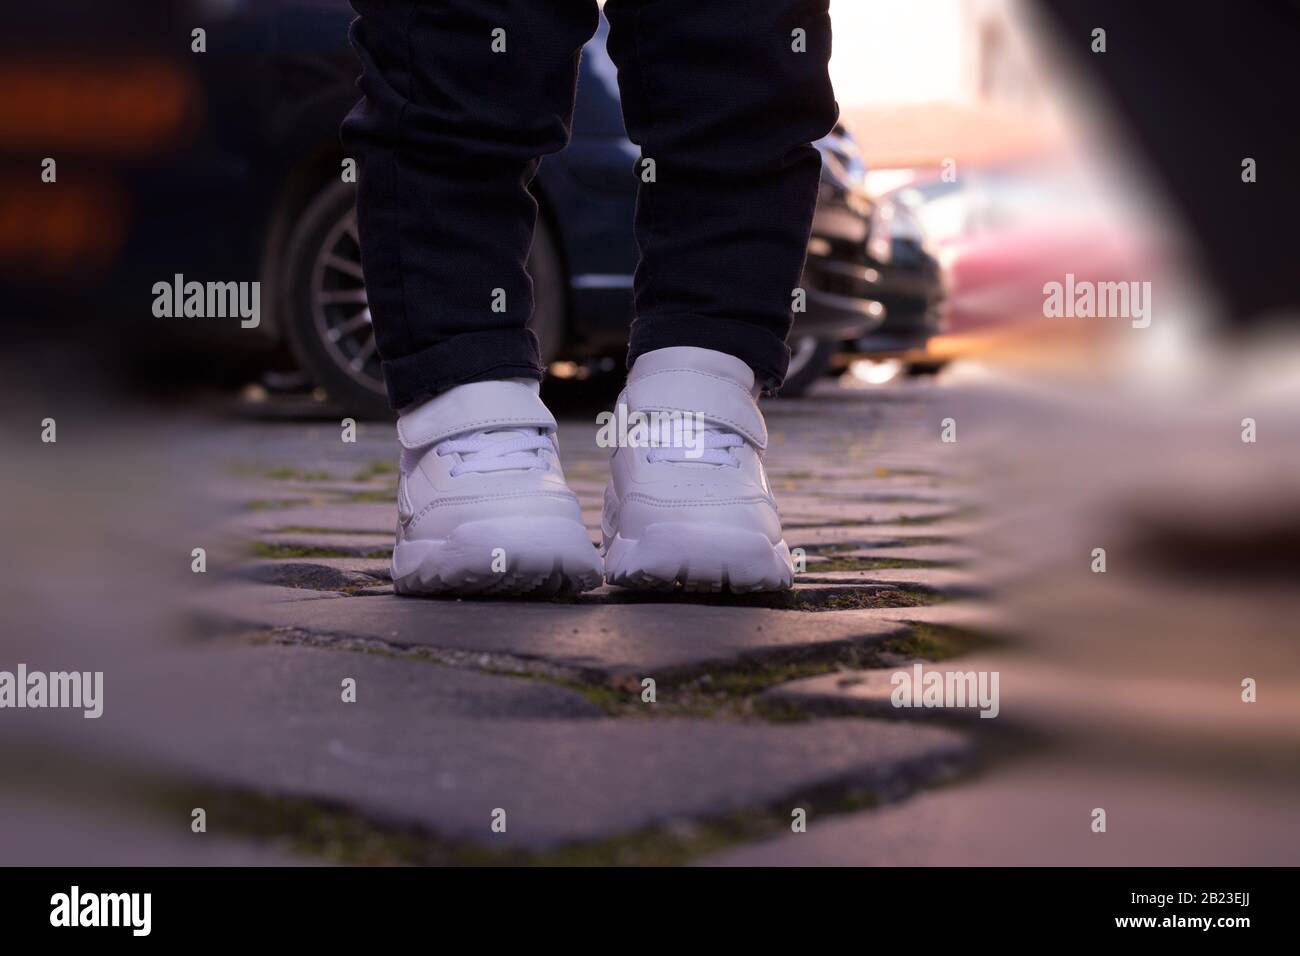 Kinder weiße Sportschuhe Pads Straßenbelag verwischen Jeans kleine Beine  Junge stehend Stockfotografie - Alamy